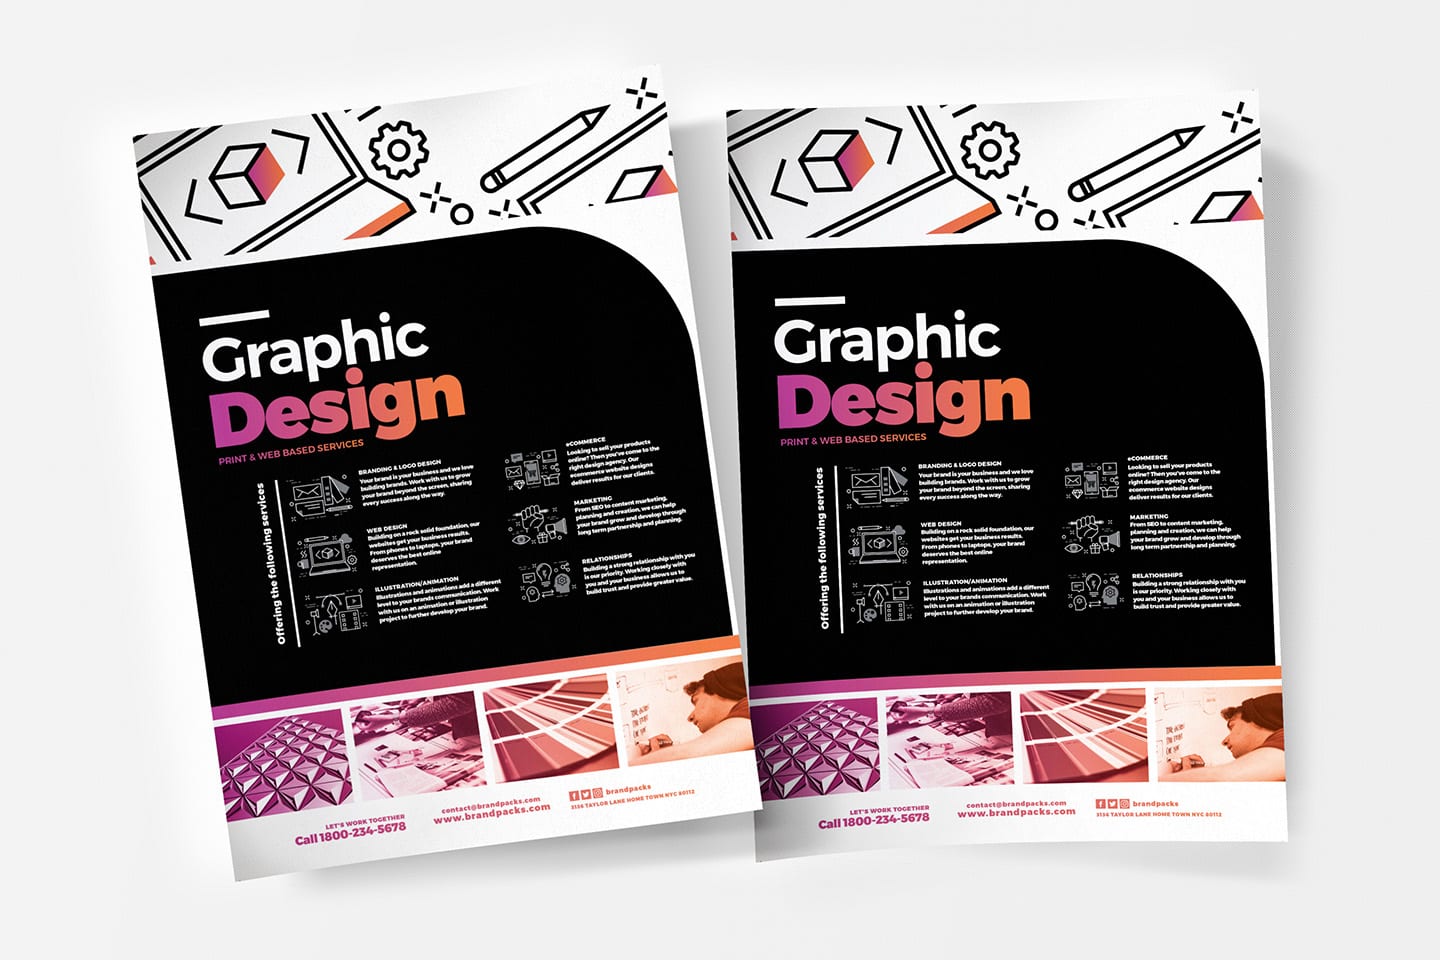  Graphic  Design  Agency Poster Template  v5 BrandPacks